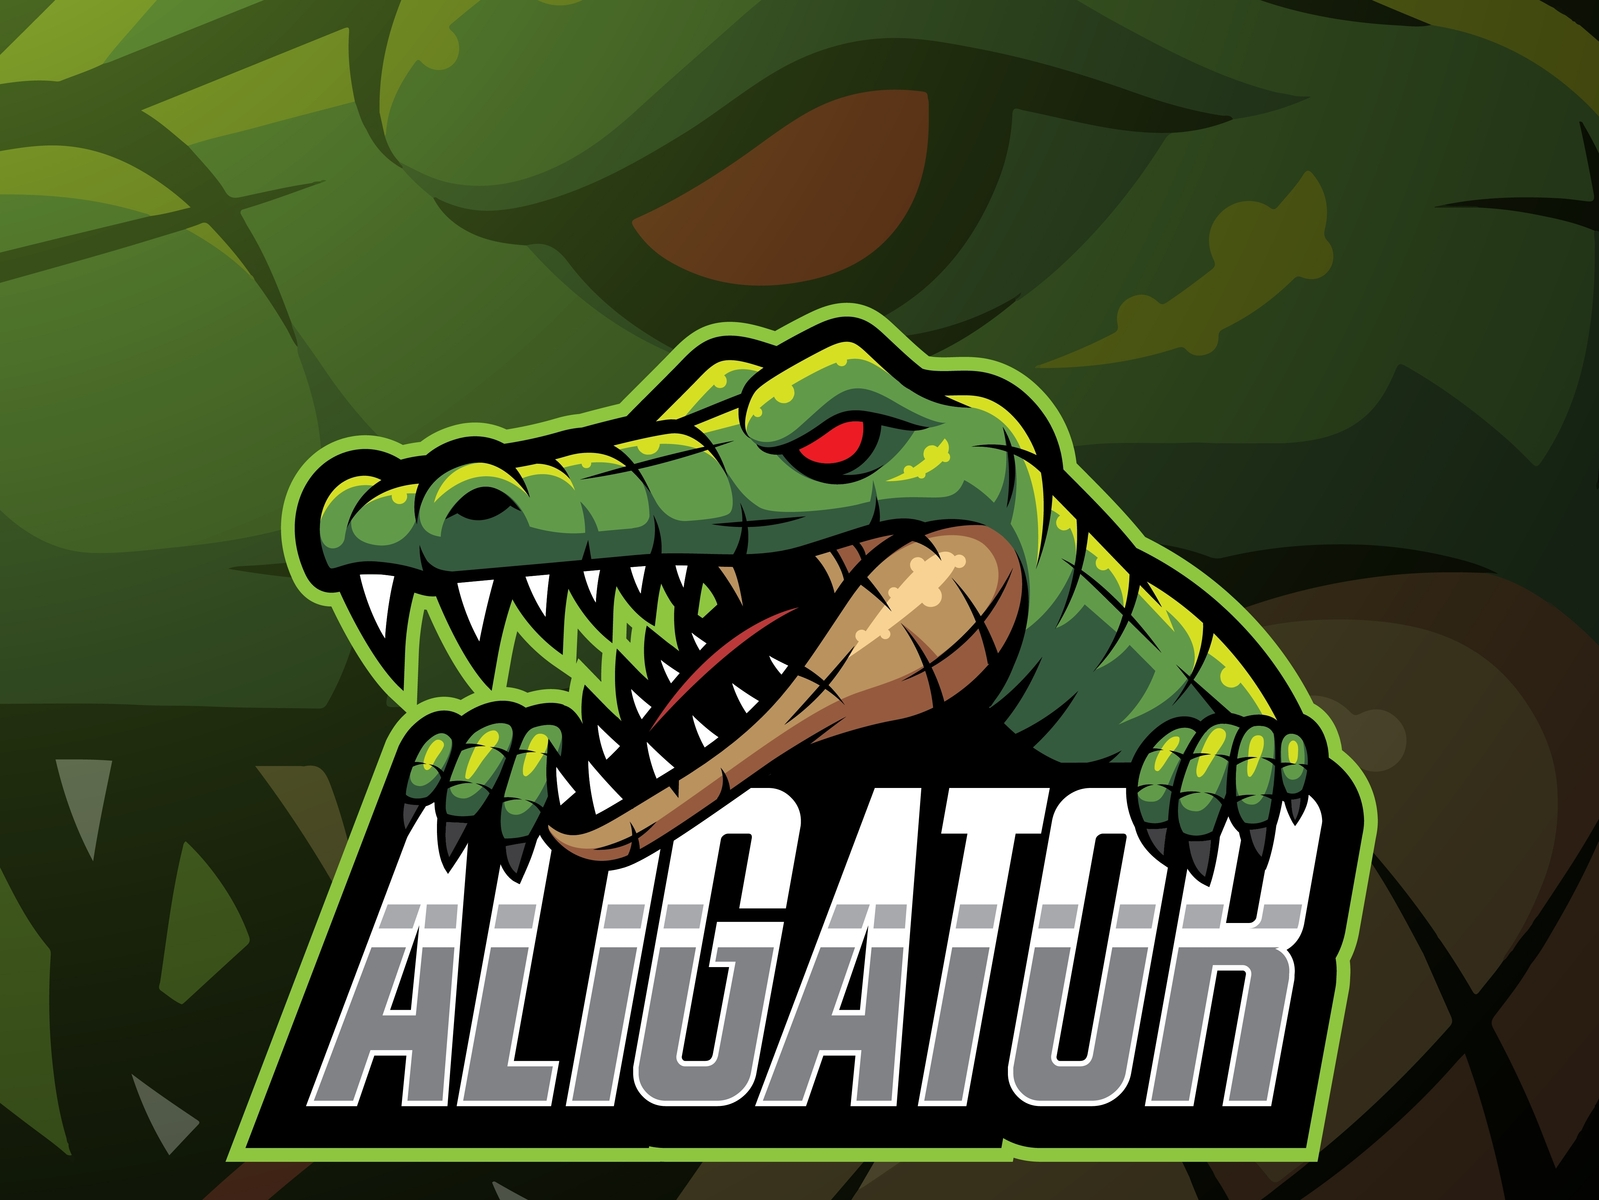 Steam alligator strike фото 105